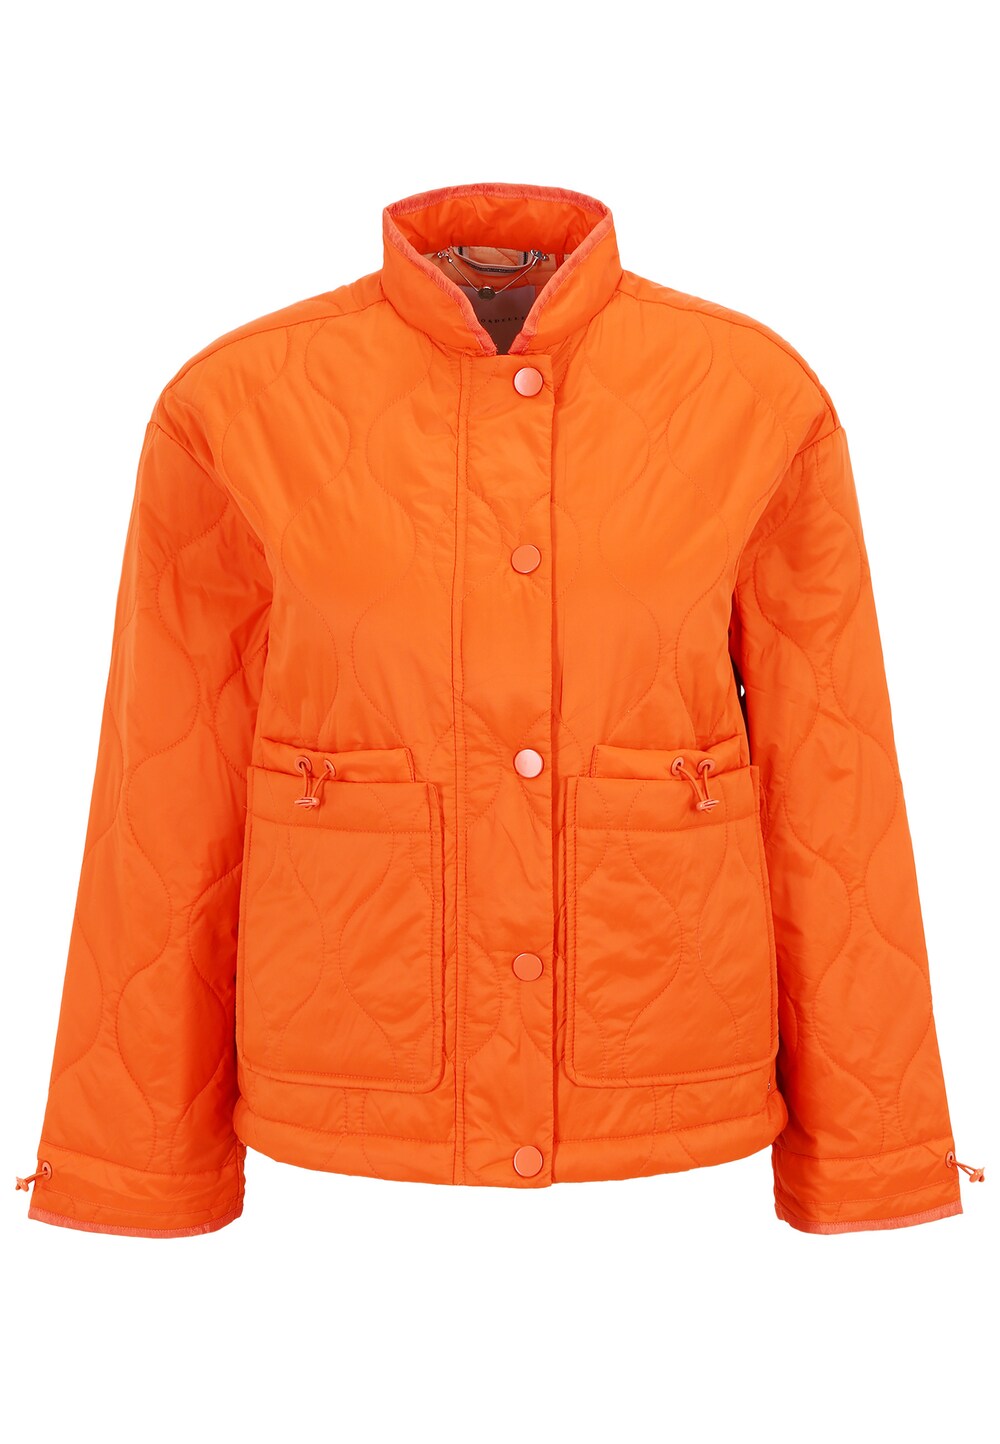 межсезонная куртка rino Межсезонная куртка Rino & Pelle Buena, апельсин